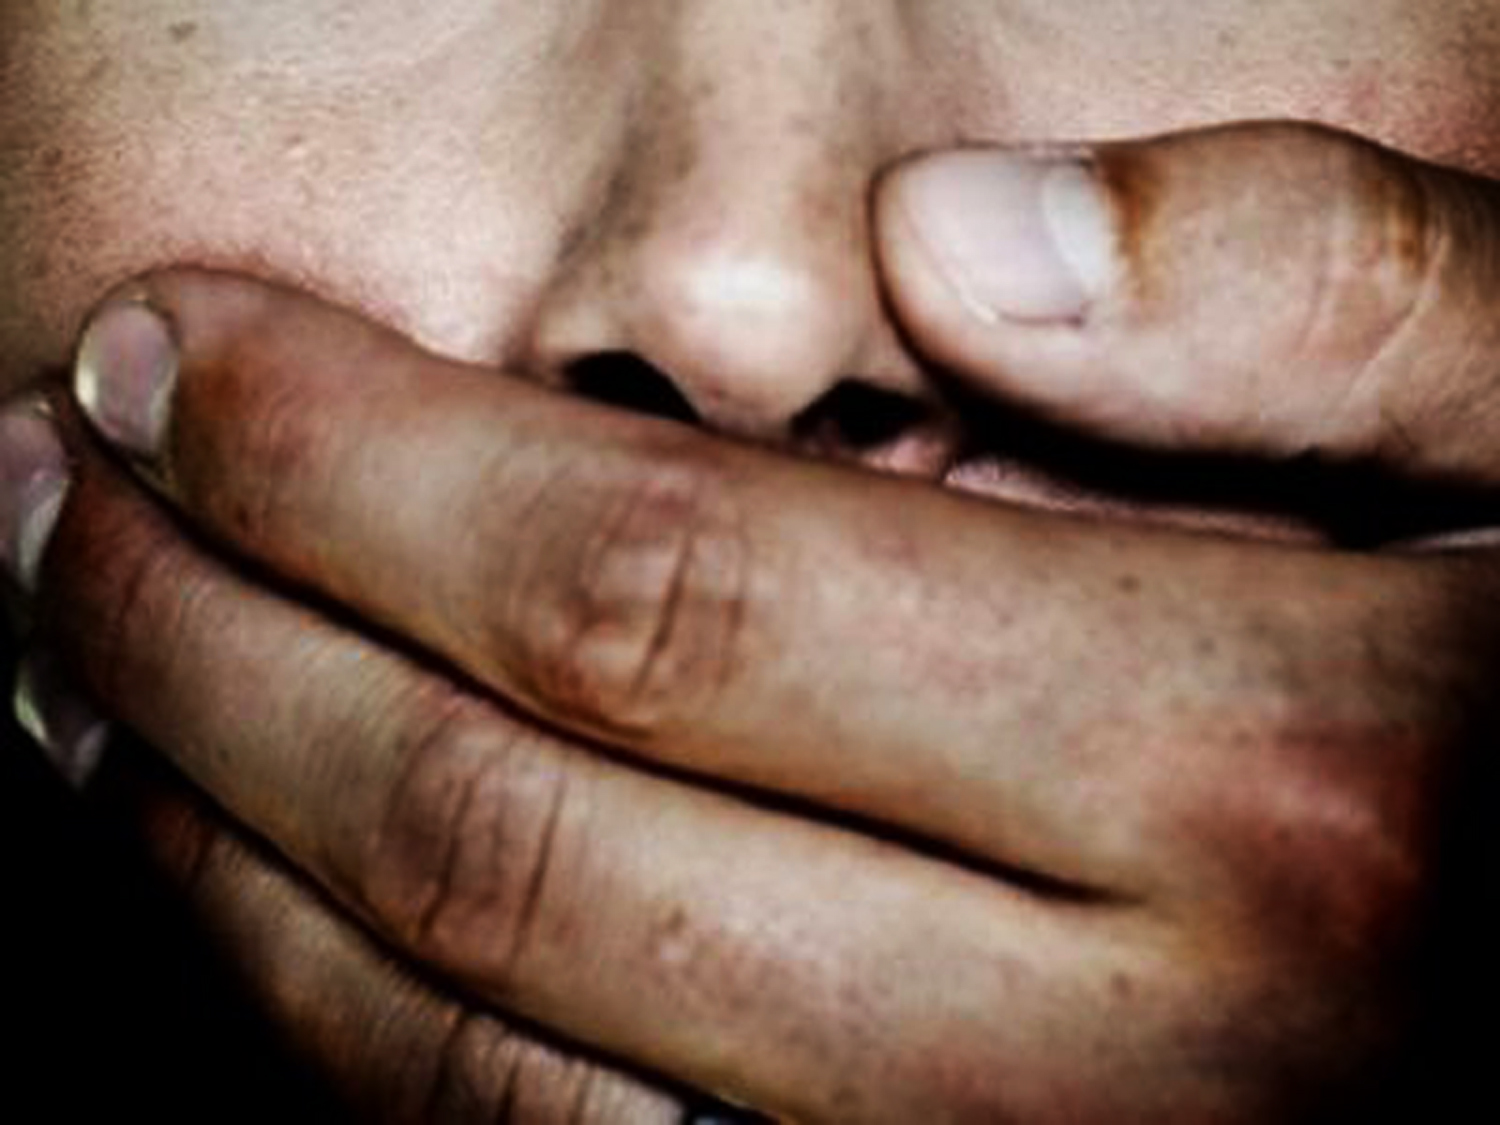 Καλαμαριά: Συνελήφθη ηλικιωμένος για αποπλάνηση και ασέλγεια σε ανήλικο αγόρι